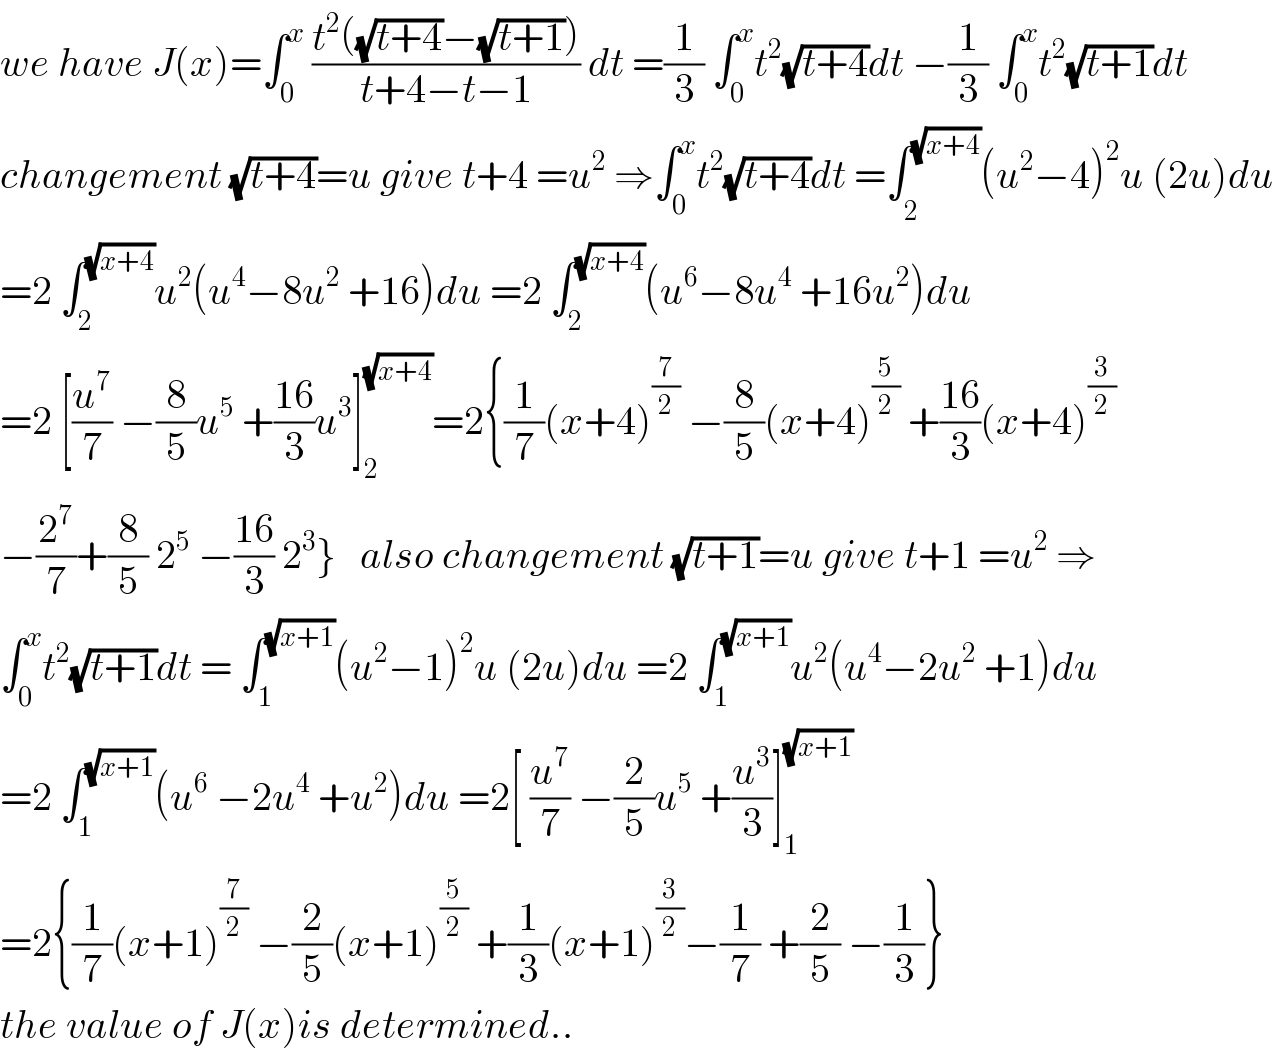 we have J(x)=∫_0 ^x  ((t^2 ((√(t+4))−(√(t+1))))/(t+4−t−1)) dt =(1/3) ∫_0 ^x t^2 (√(t+4))dt −(1/3) ∫_0 ^x t^2 (√(t+1))dt  changement (√(t+4))=u give t+4 =u^2  ⇒∫_0 ^x t^2 (√(t+4))dt =∫_2^  ^(√(x+4)) (u^2 −4)^2 u (2u)du  =2 ∫_2 ^(√(x+4)) u^2 (u^4 −8u^2  +16)du =2 ∫_2 ^(√(x+4)) (u^6 −8u^4  +16u^2 )du  =2 [(u^7 /7) −(8/5)u^5  +((16)/3)u^3 ]_2 ^(√(x+4)) =2{(1/7)(x+4)^(7/2)  −(8/5)(x+4)^(5/2)  +((16)/3)(x+4)^(3/2)   −(2^7 /7)+(8/5) 2^5  −((16)/3) 2^3 }   also changement (√(t+1))=u give t+1 =u^2  ⇒  ∫_0 ^x t^2 (√(t+1))dt = ∫_1 ^(√(x+1)) (u^2 −1)^2 u (2u)du =2 ∫_1 ^(√(x+1)) u^2 (u^4 −2u^2  +1)du  =2 ∫_1 ^(√(x+1)) (u^6  −2u^4  +u^2 )du =2[ (u^7 /7) −(2/5)u^5  +(u^3 /3)]_1 ^(√(x+1))   =2{(1/7)(x+1)^(7/2)  −(2/5)(x+1)^(5/2)  +(1/3)(x+1)^(3/2) −(1/7) +(2/5) −(1/3)}  the value of J(x)is determined..  